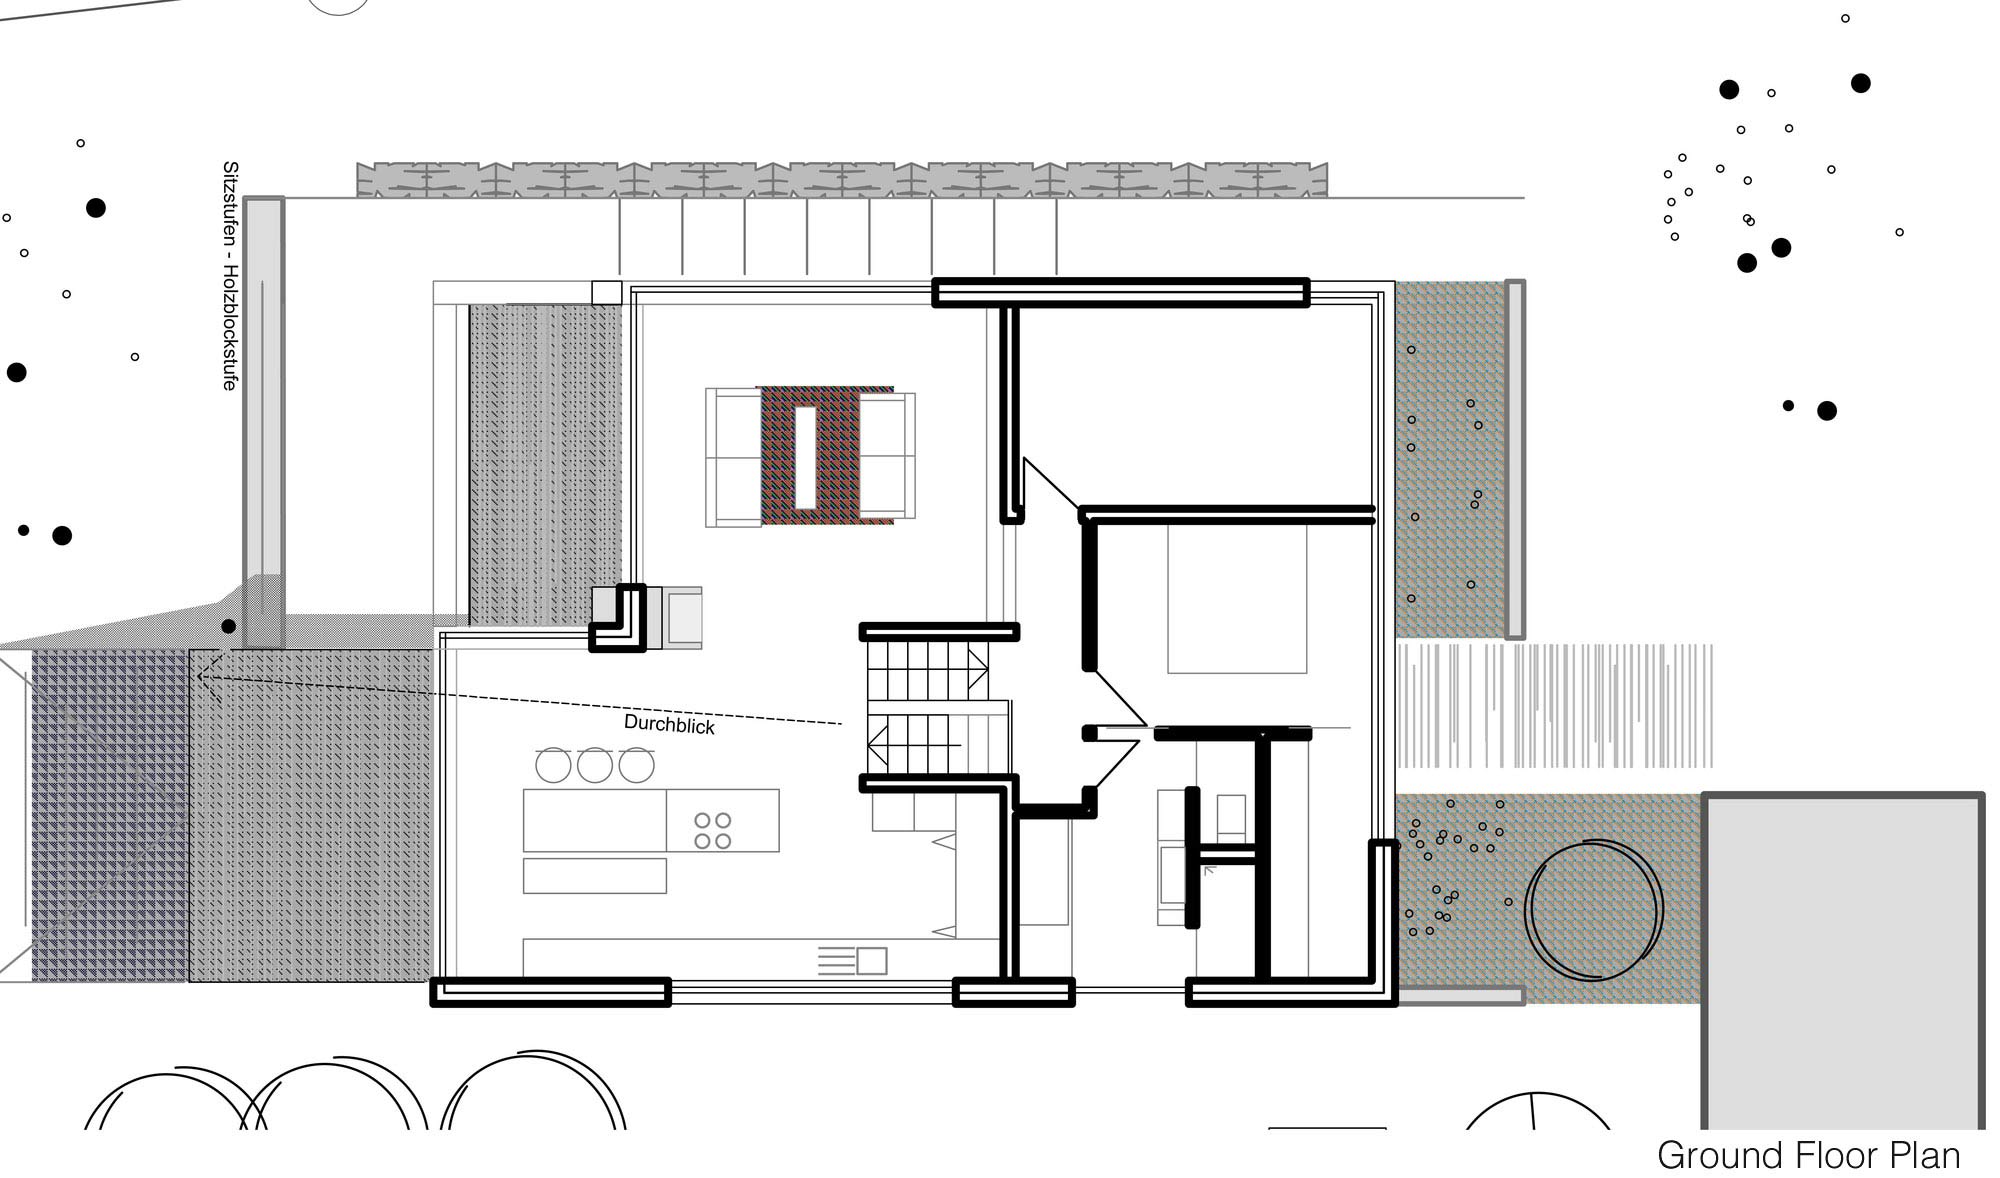 Ground Floor Plan, Home Split Level Home in Aalen, Germany